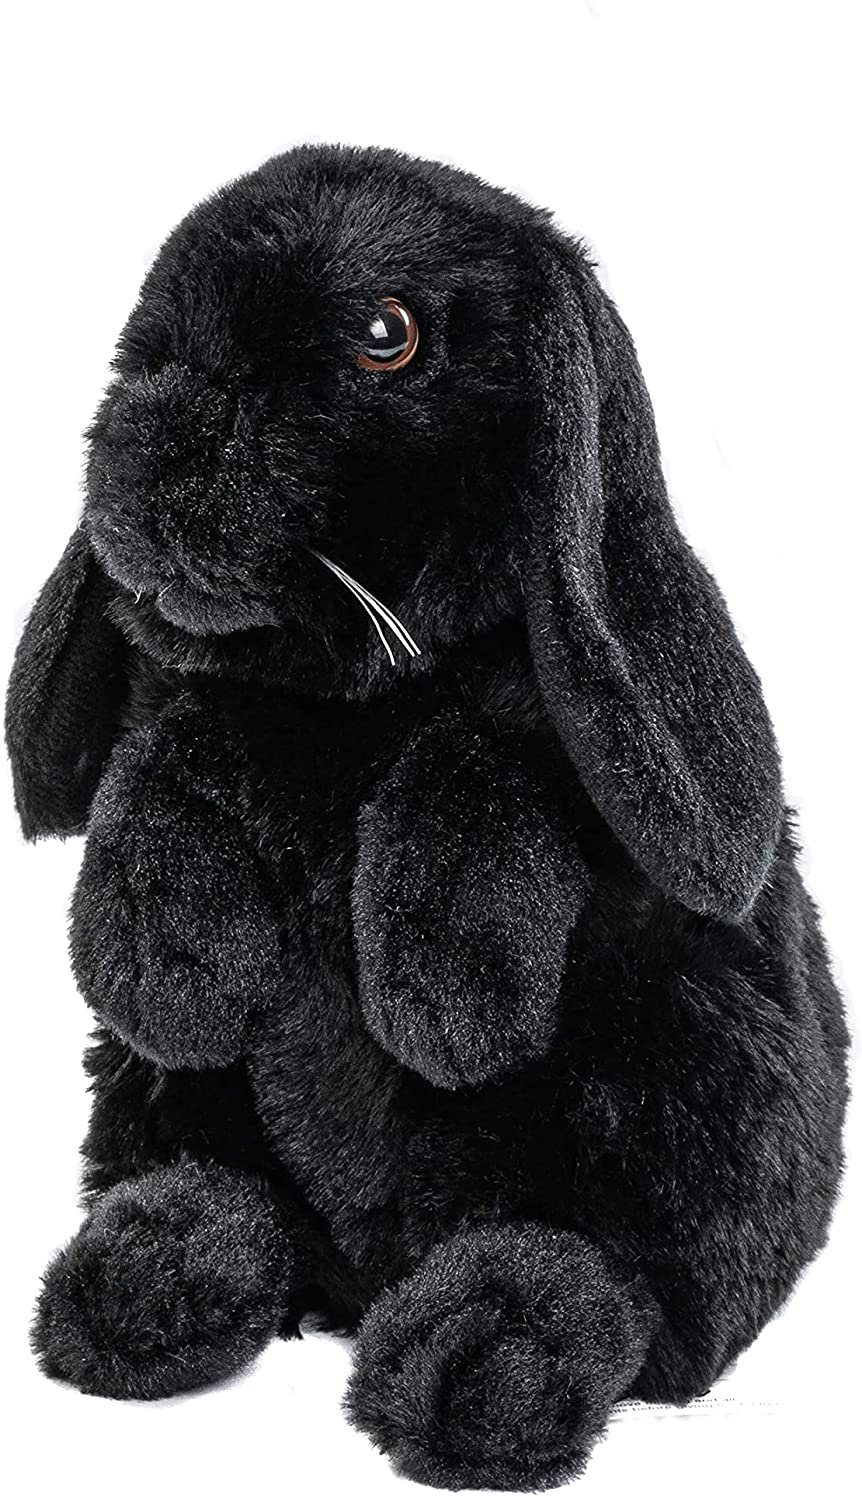 Uni-Toys Kuscheltier Widderkaninchen schwarz - 19 cm - Plüsch-Hase, Kaninchen - Plüschtier, zu 100 % recyceltes Füllmaterial | Kuscheltiere